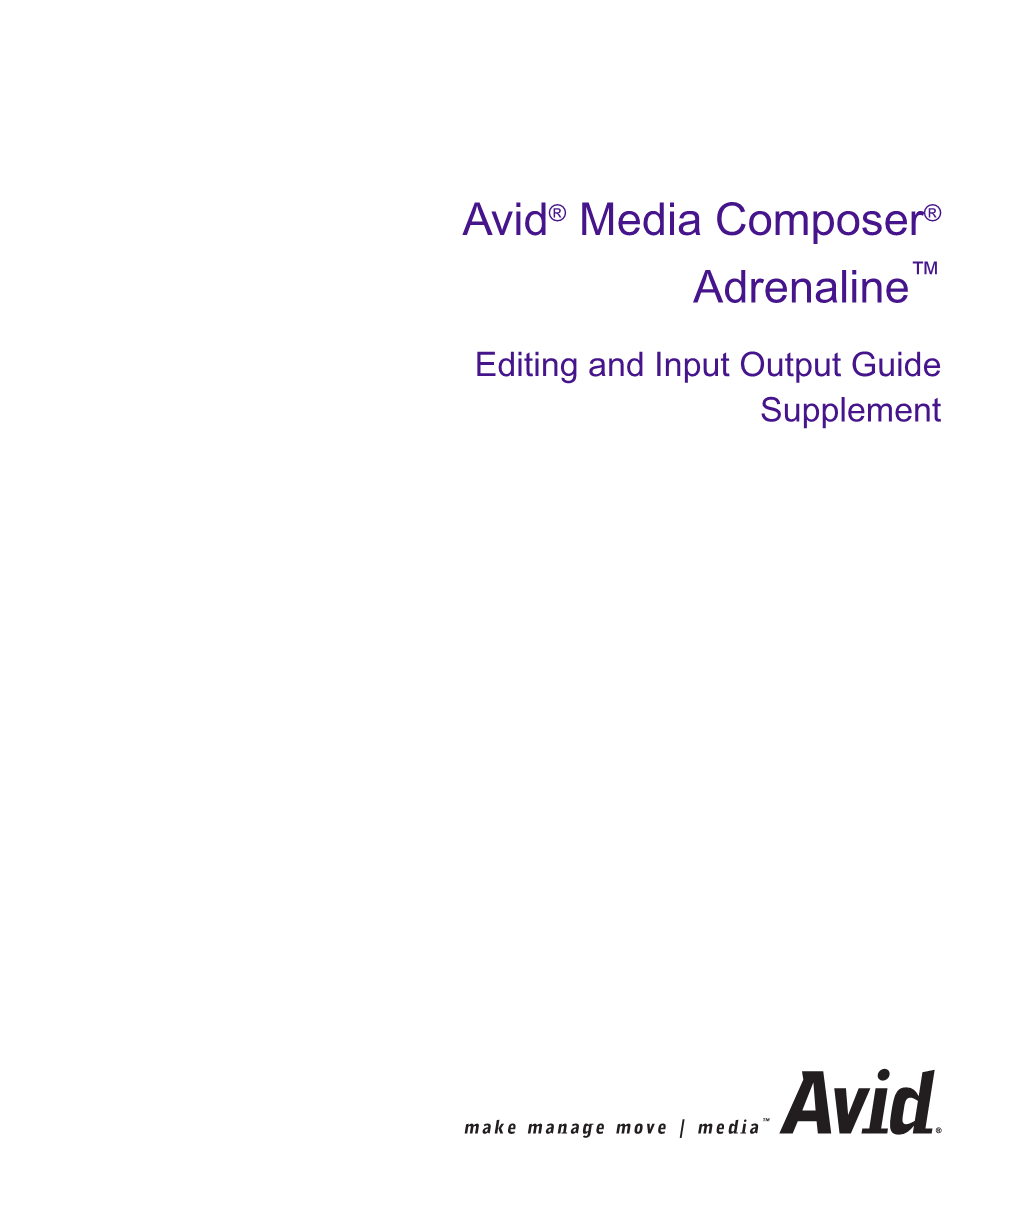 Avid® Media Composer® Adrenaline™